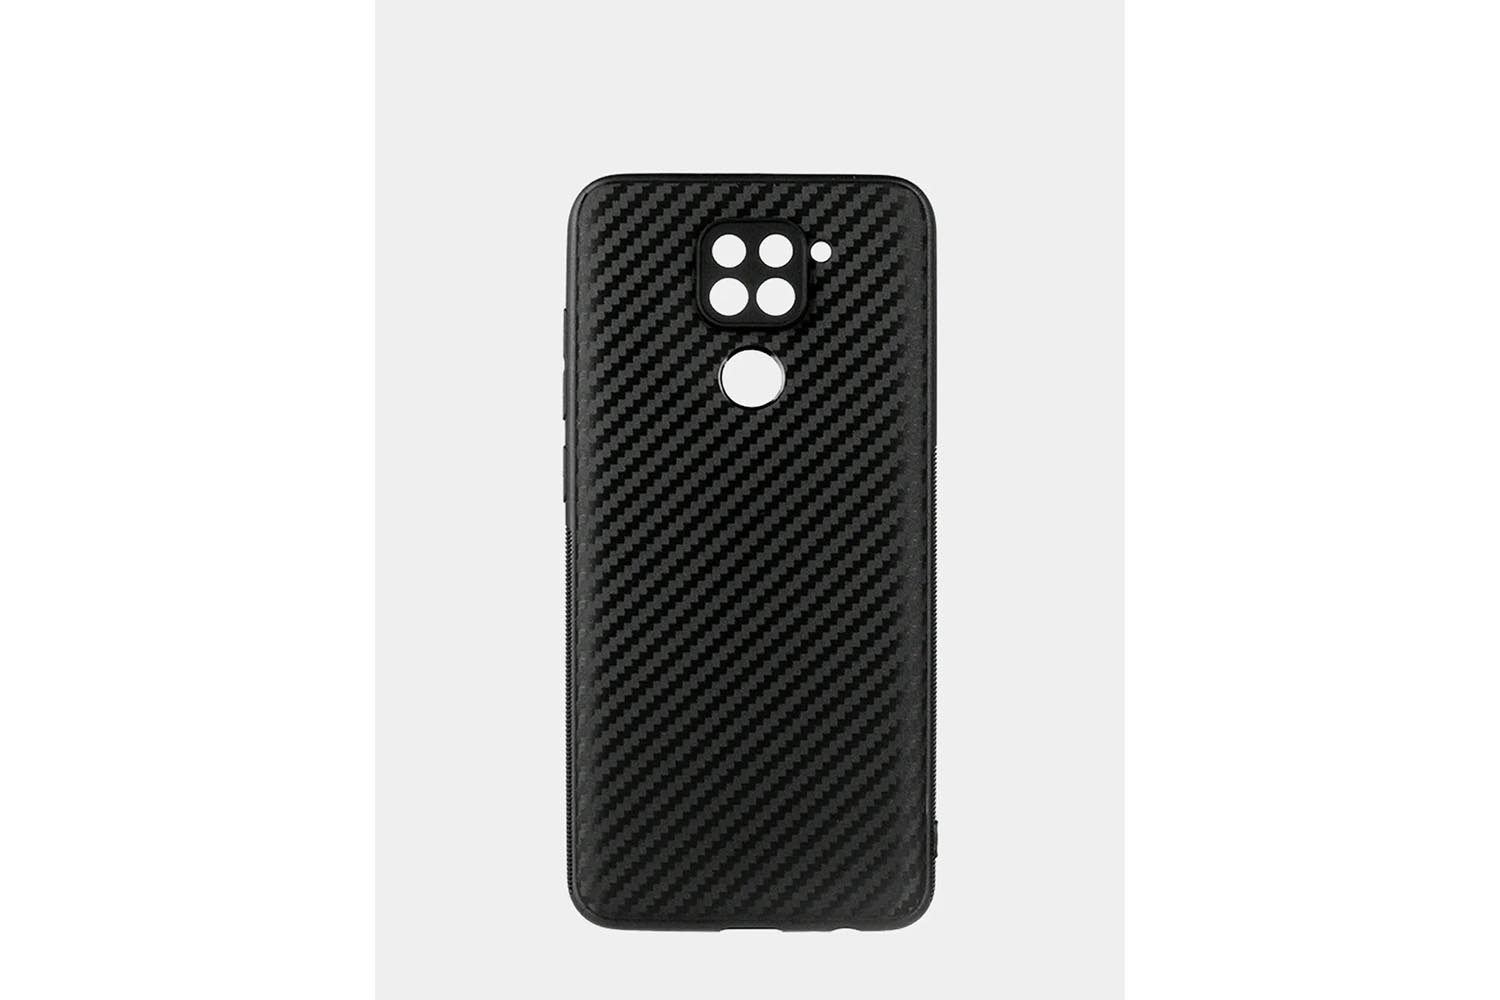 Силиконовый чехол кейс карбон Xiaomi Redmi Note 9 (черный)